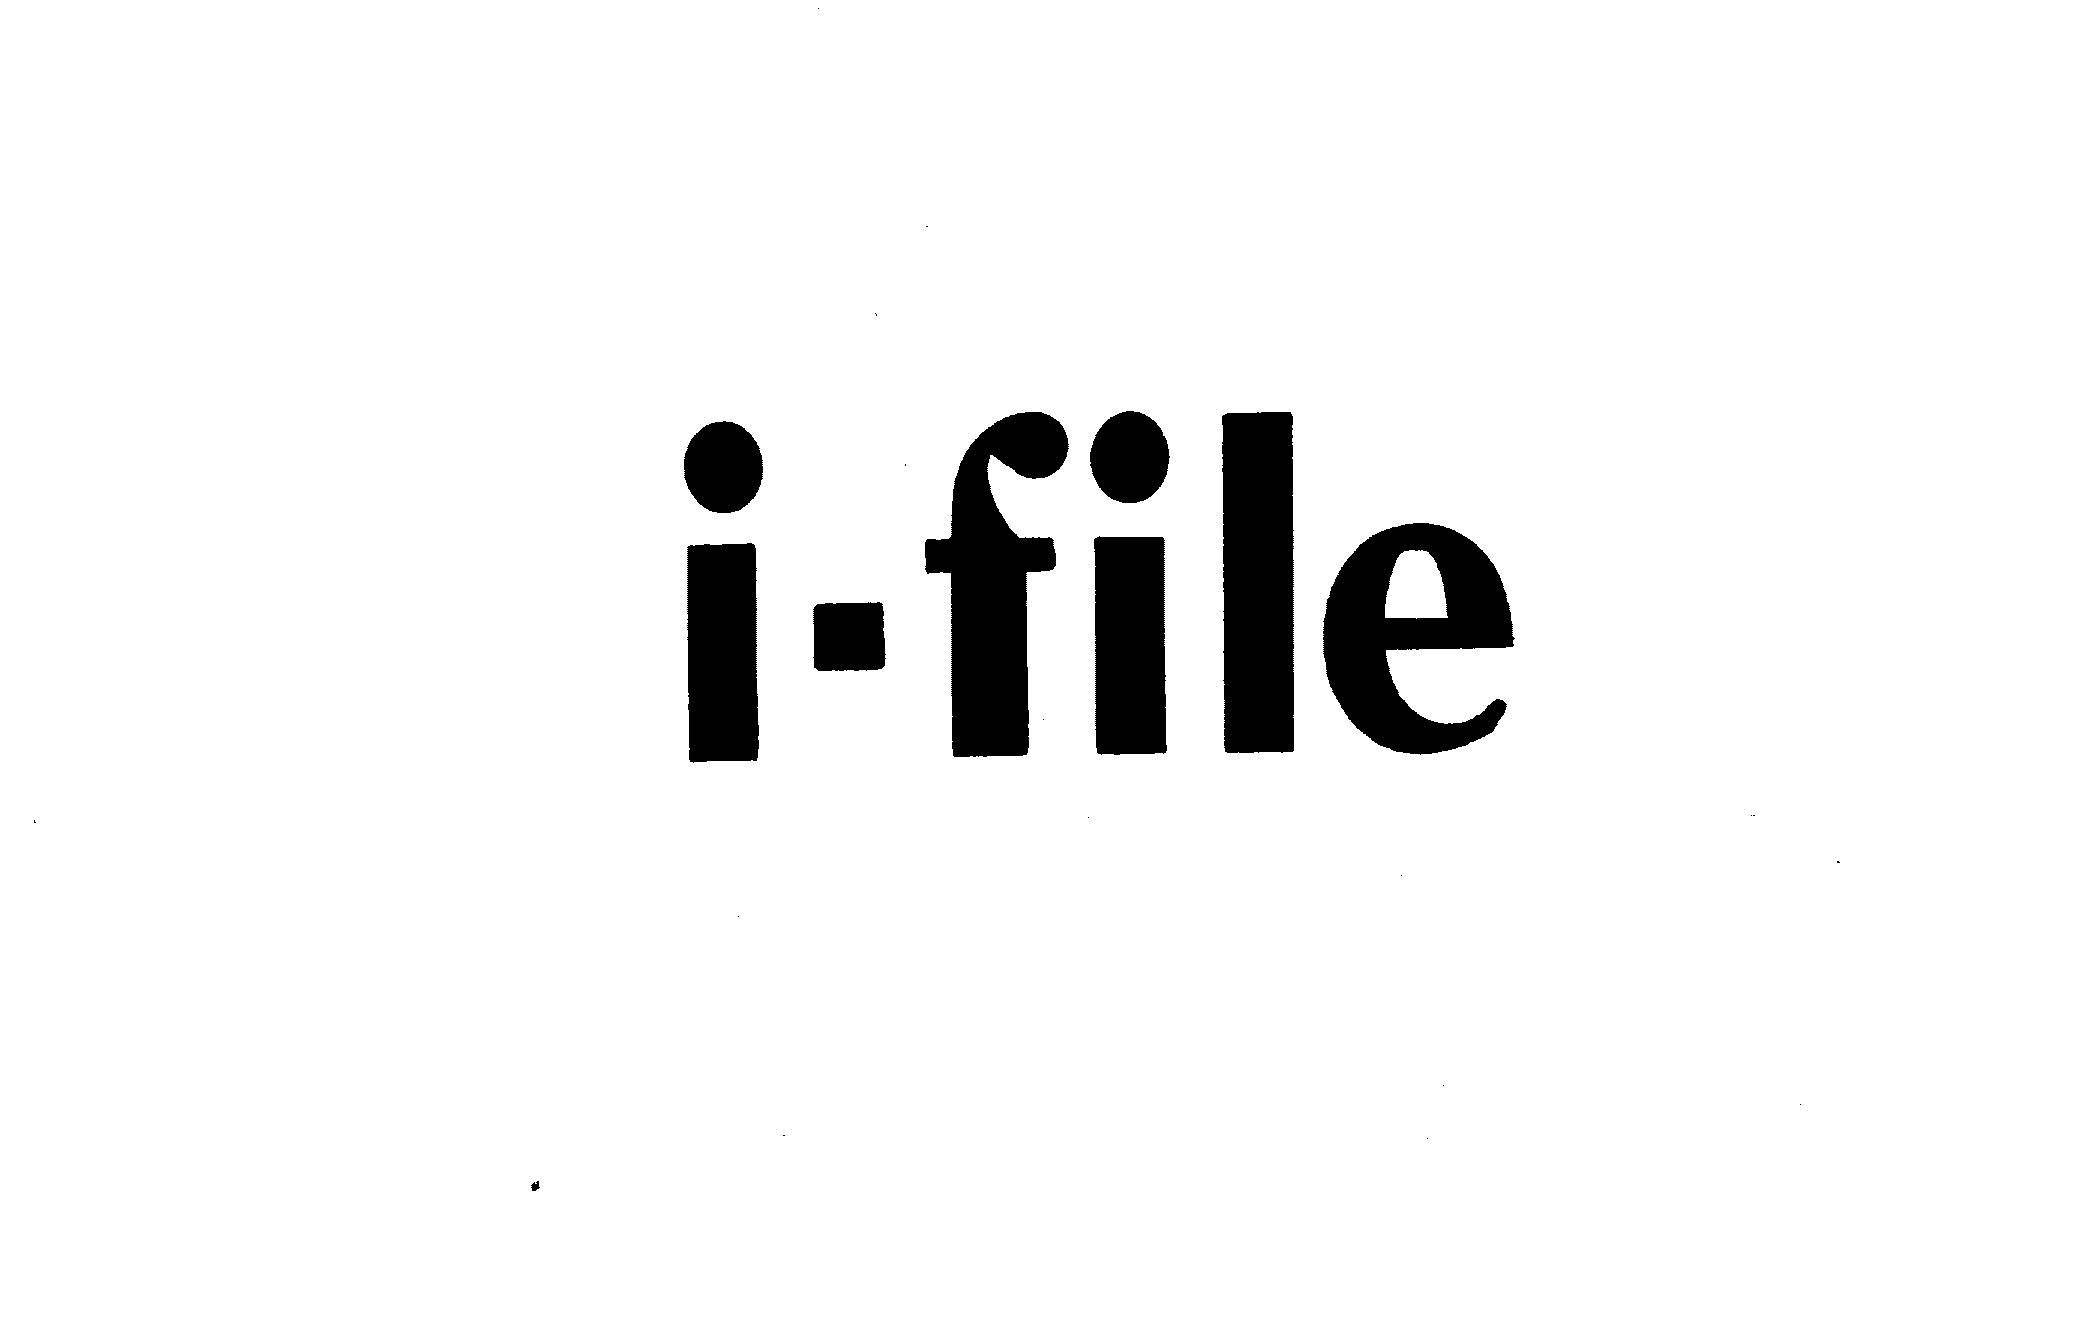  I-FILE